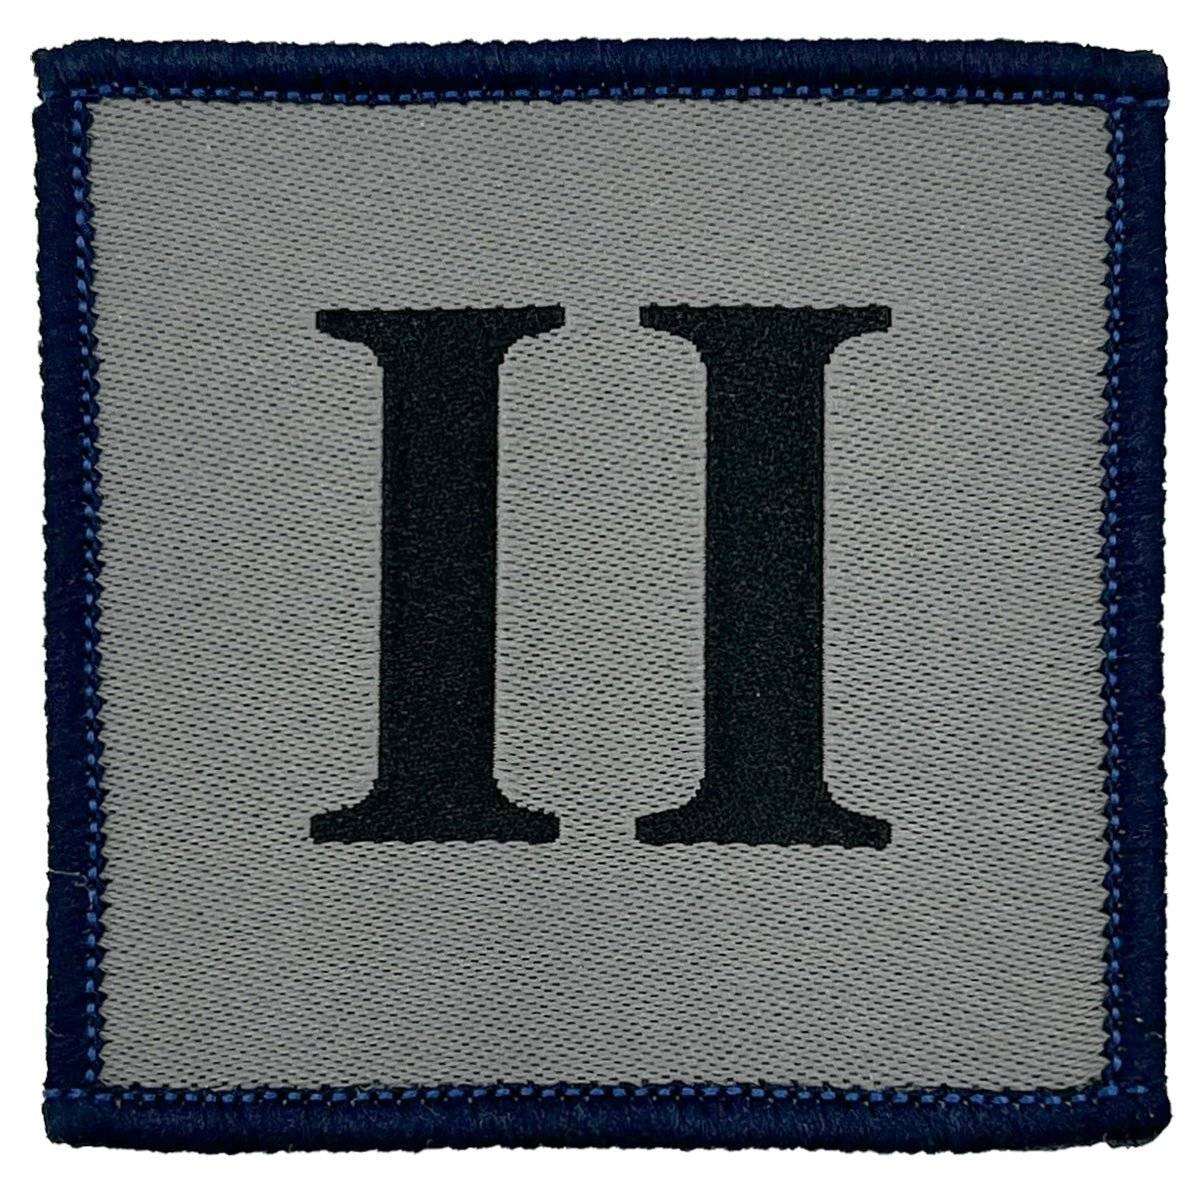 Ranger Regiment II TRF Iron On Badge with Dark Blue Border - John Bull Clothing